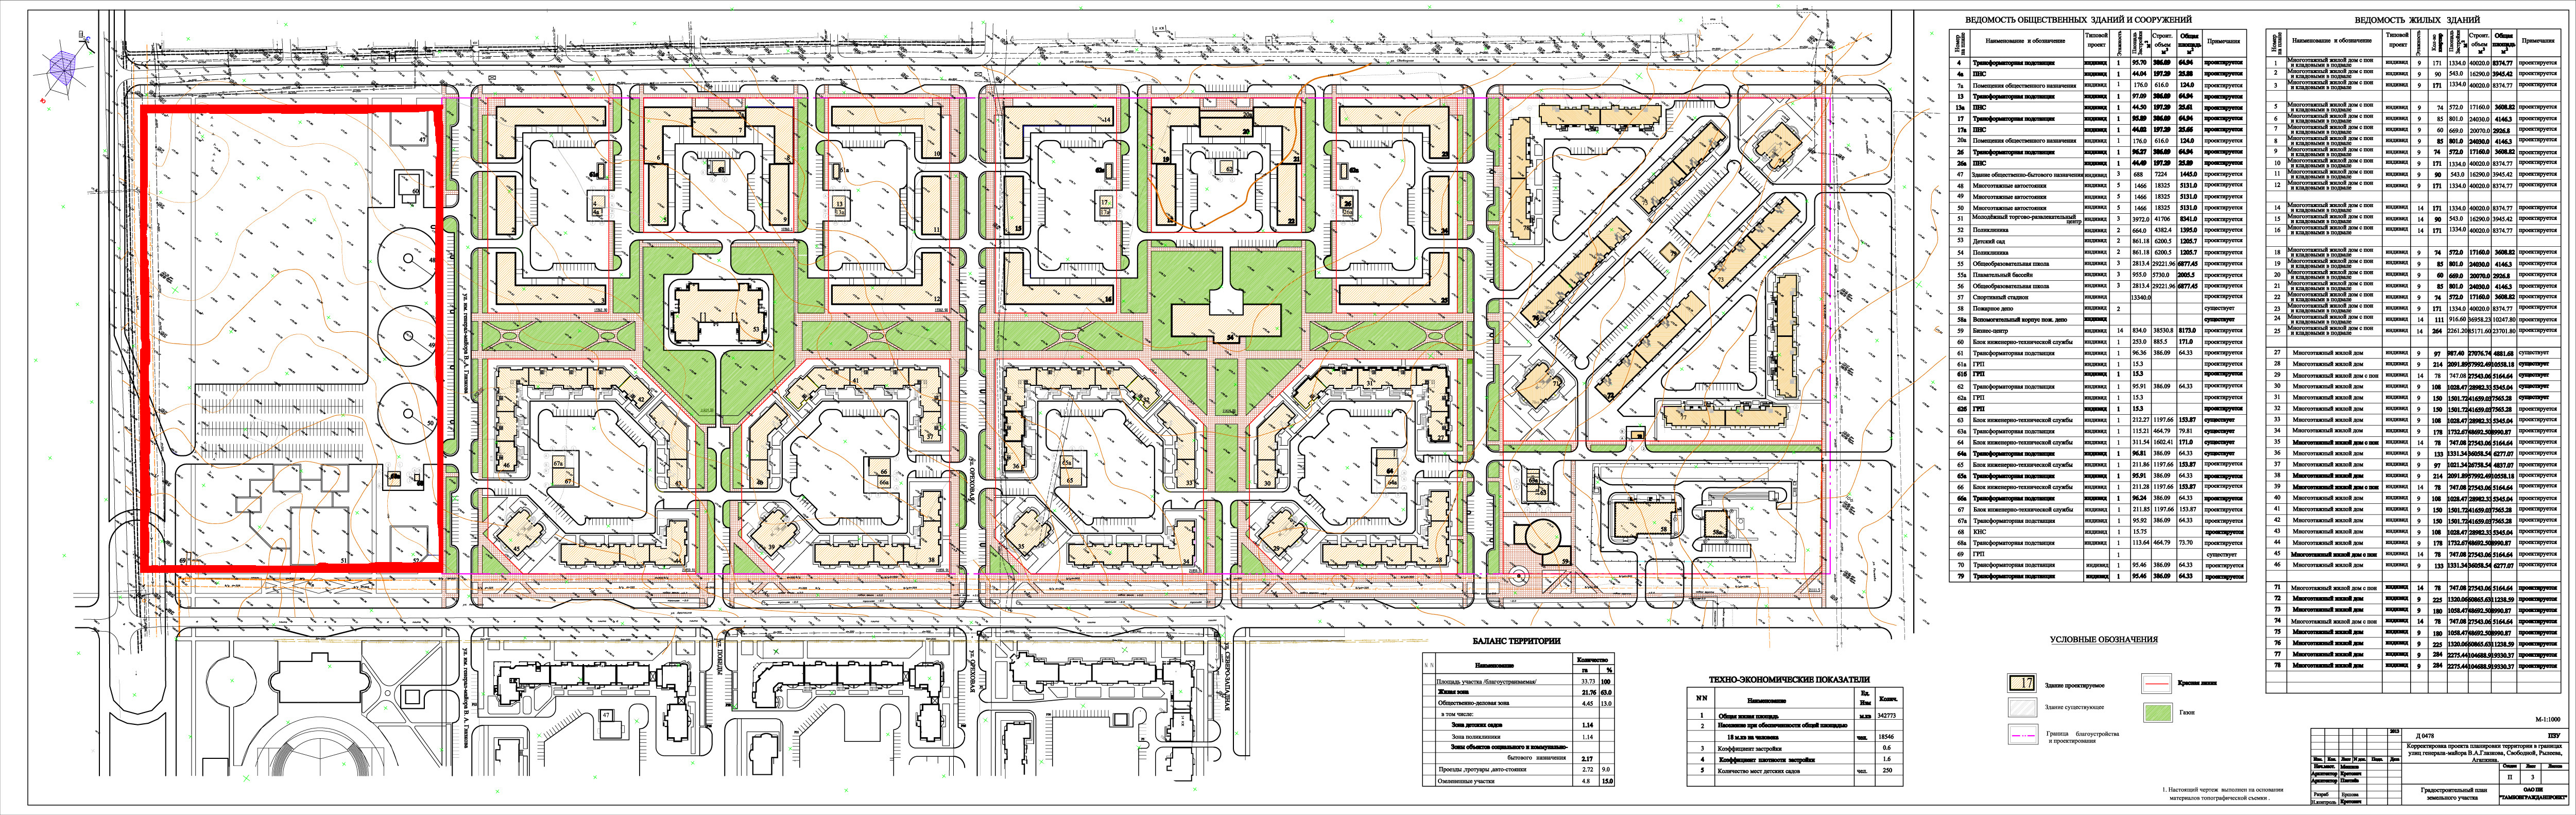 Проект планировки микрорайона Уютный - 2013 года